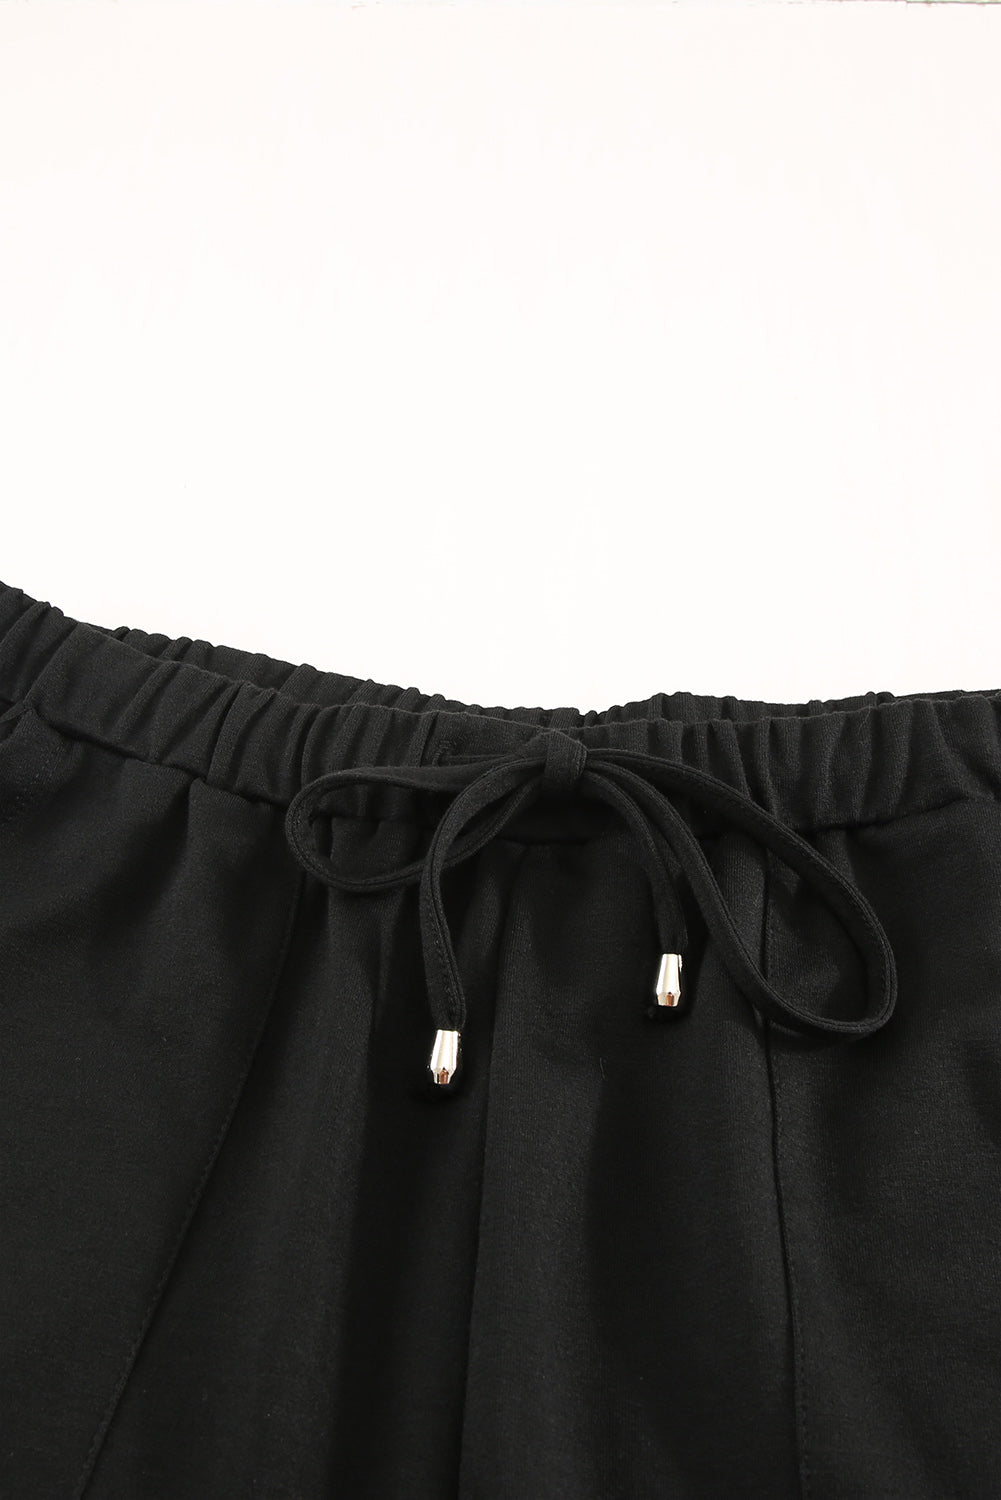 Crne kratke hlače s džepovima na vezicu u struku